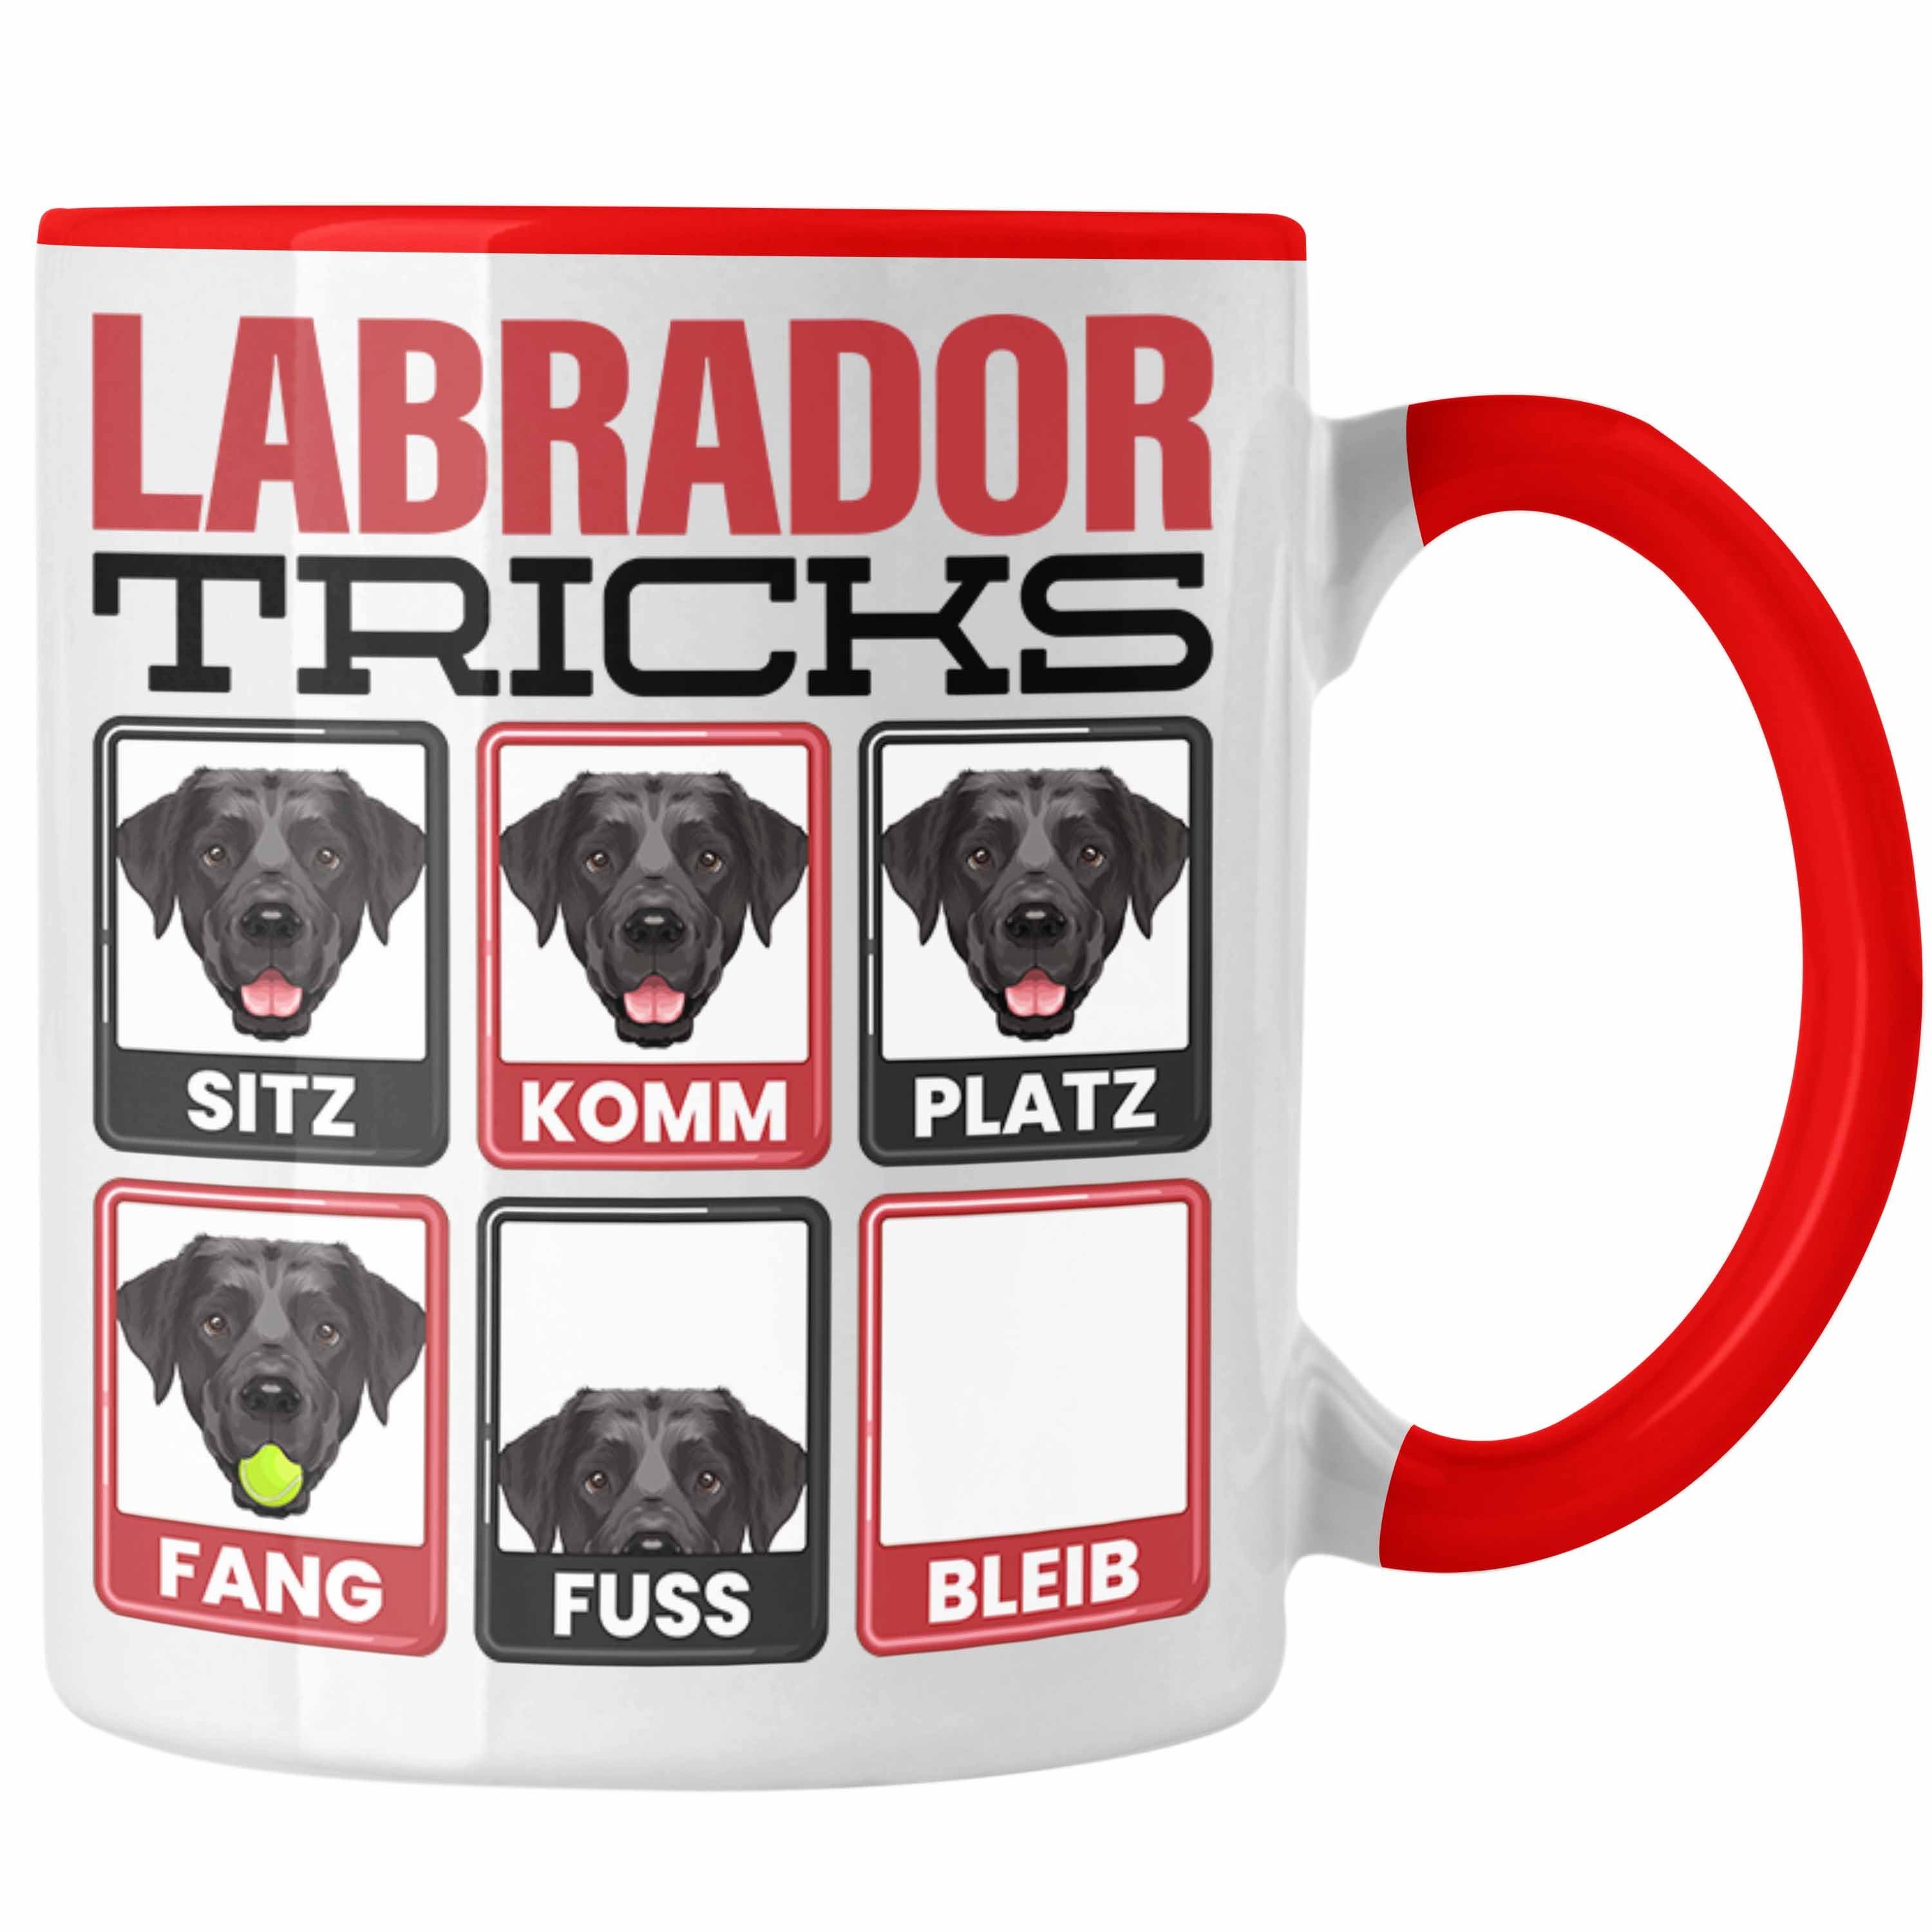 Trendation Tasse Labrador Besitzer Tasse Geschenk Lustiger Spruch Geschenkidee Labrador Rot